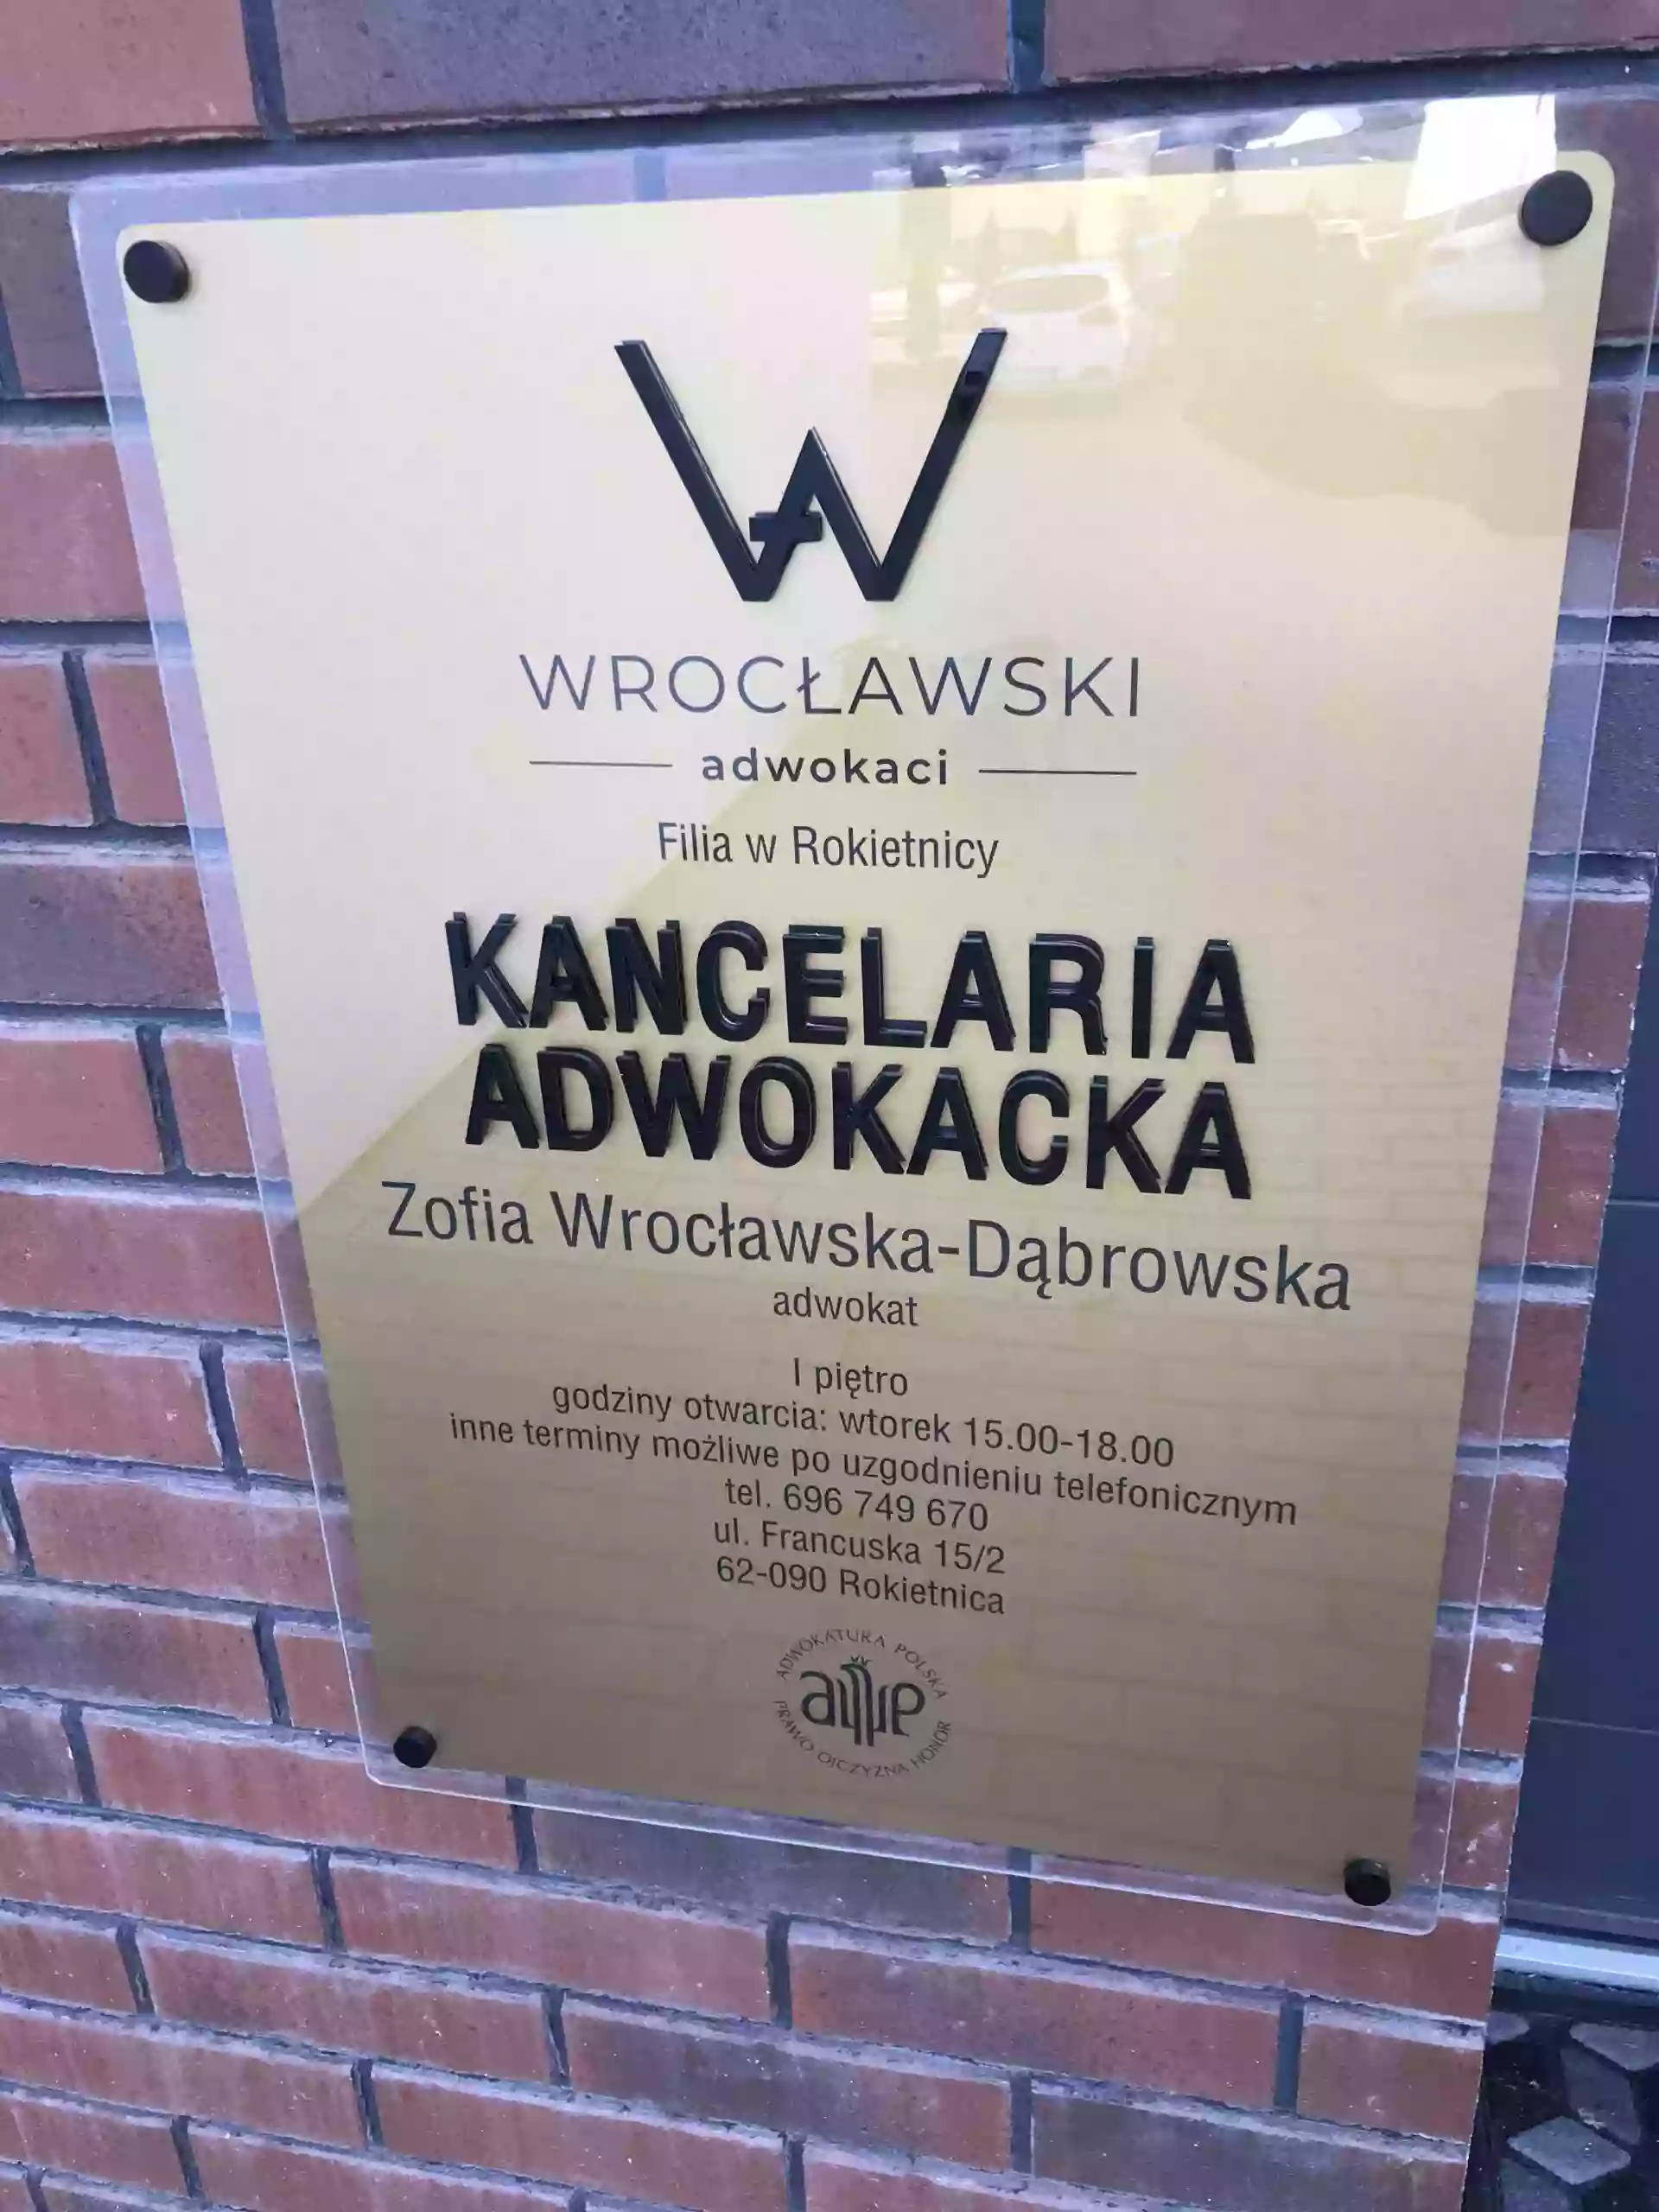 Wrocławski Adwokaci